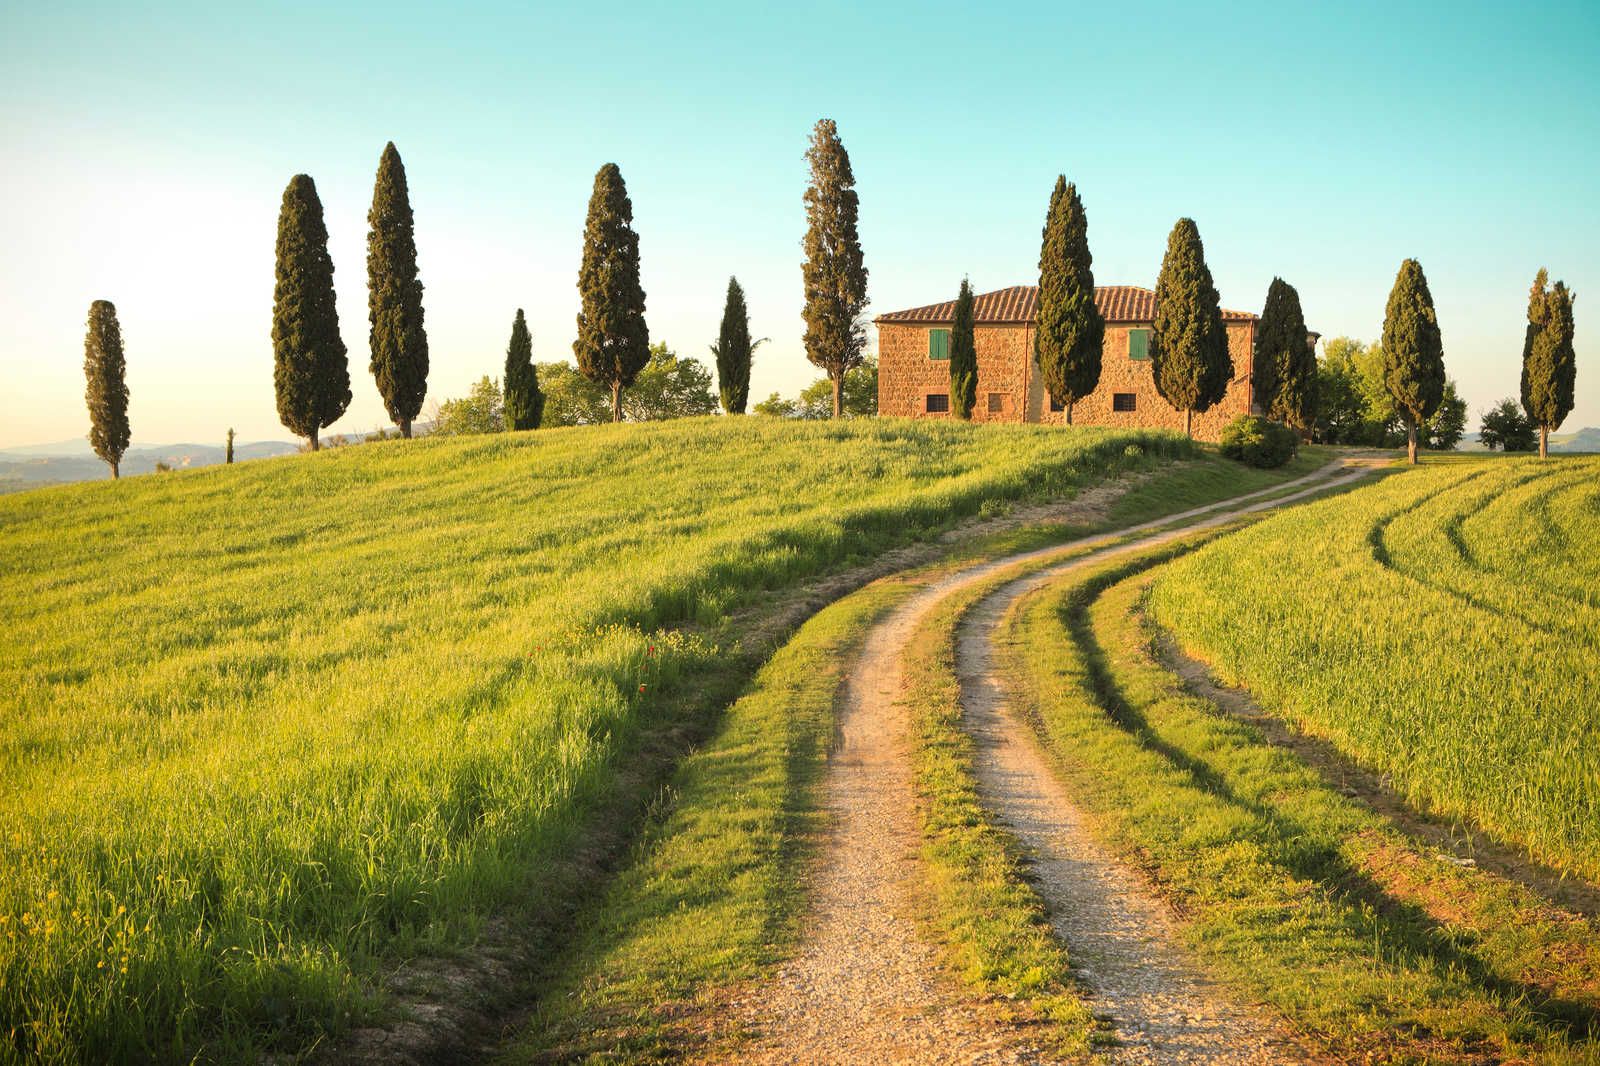             Tela Natura Toscana con Villa e Cipressi - 0,90 m x 0,60 m
        